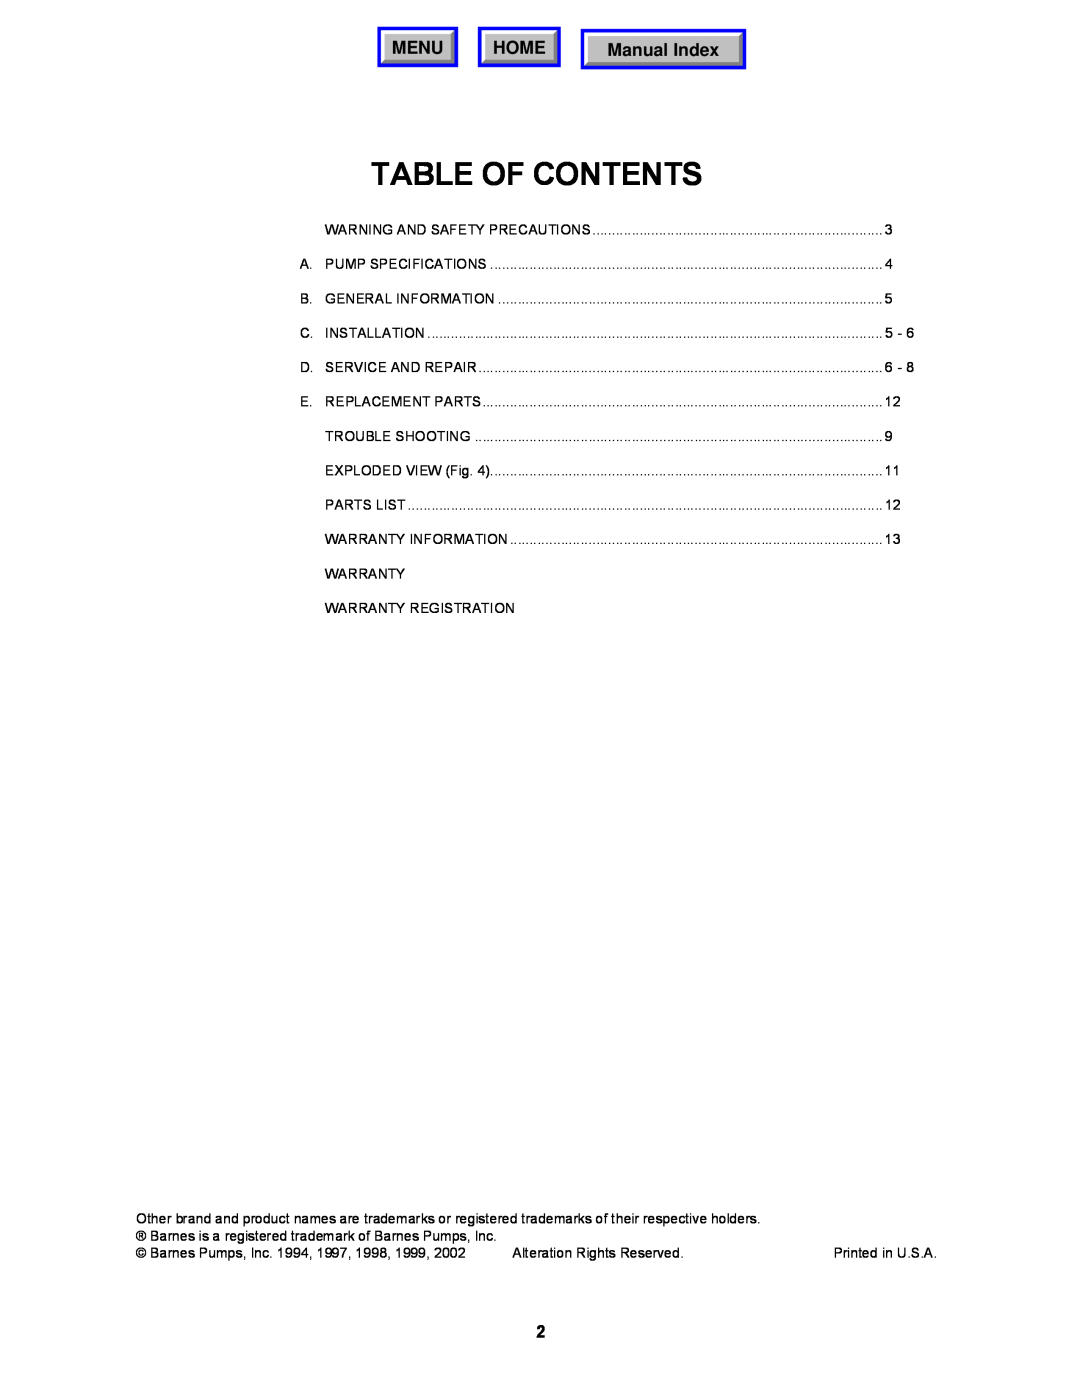 Barnes & Noble BP27D, BP27HT, BP27A operation manual Table Of Contents, Menu, Home, Manual Index 